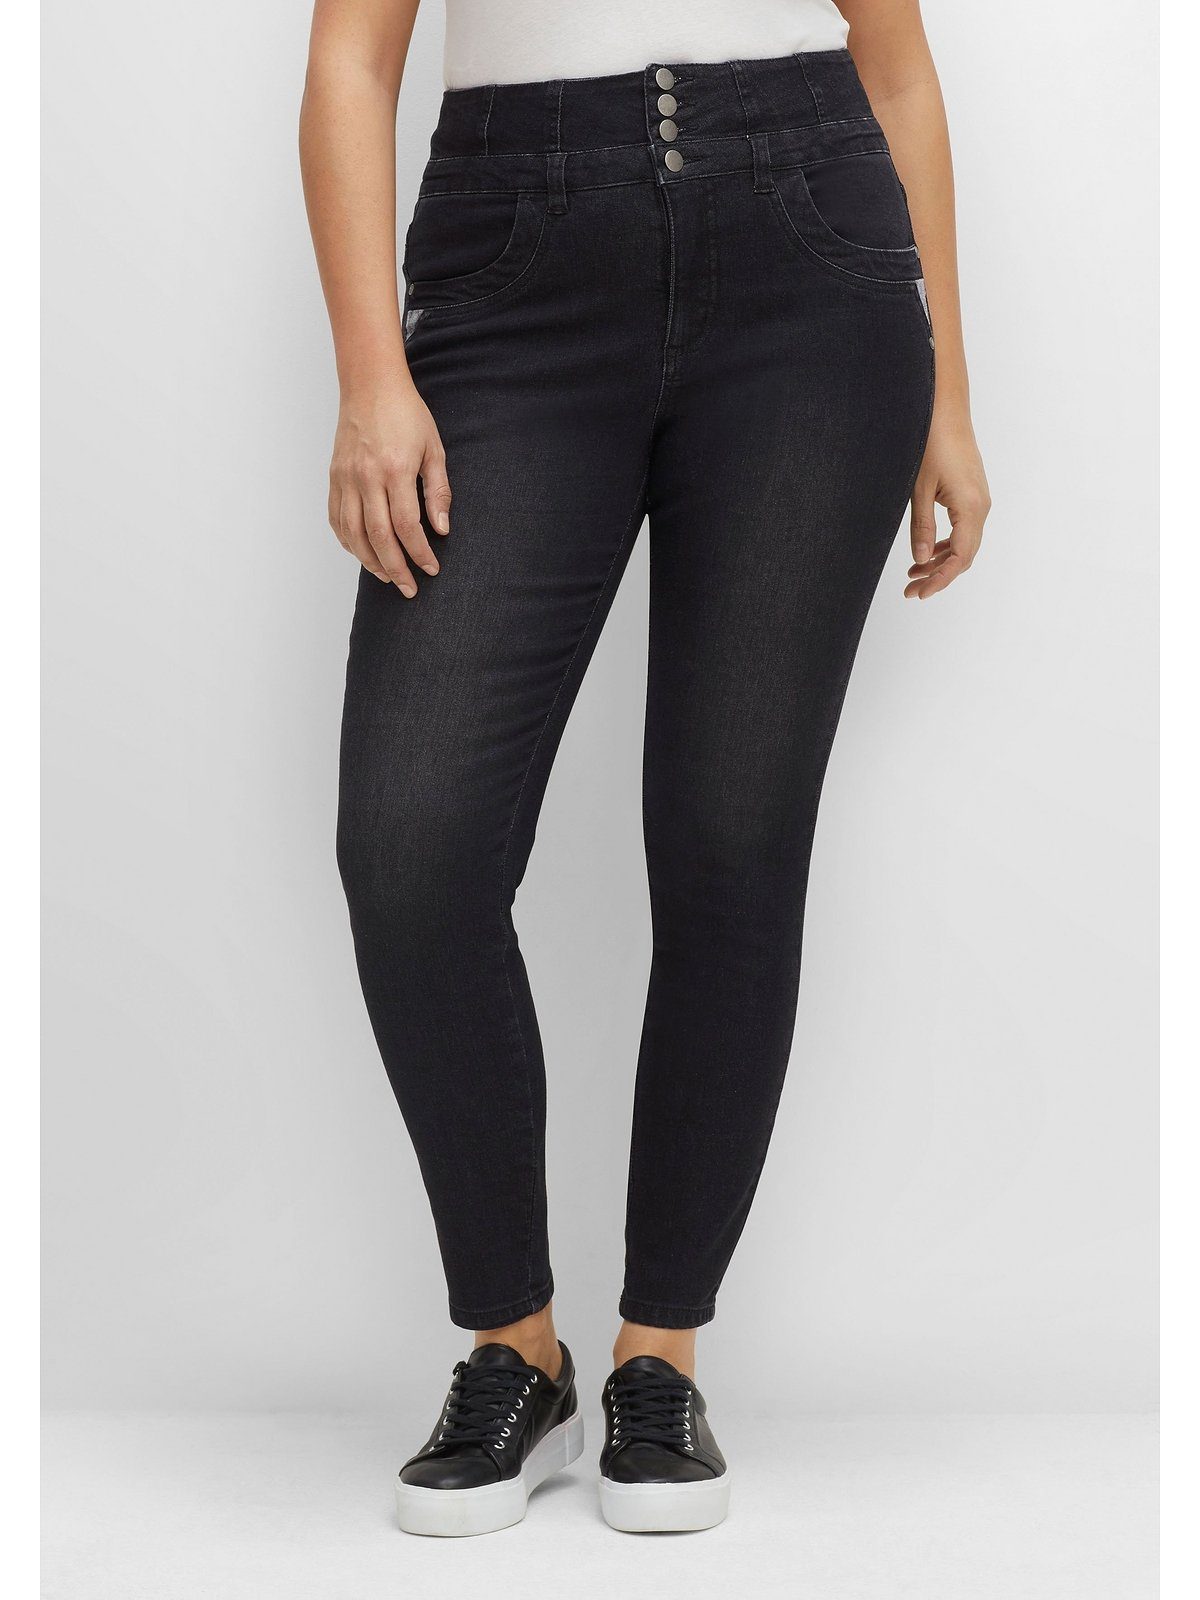 Schwarze Jeans Große Größe für Damen online kaufen | OTTO